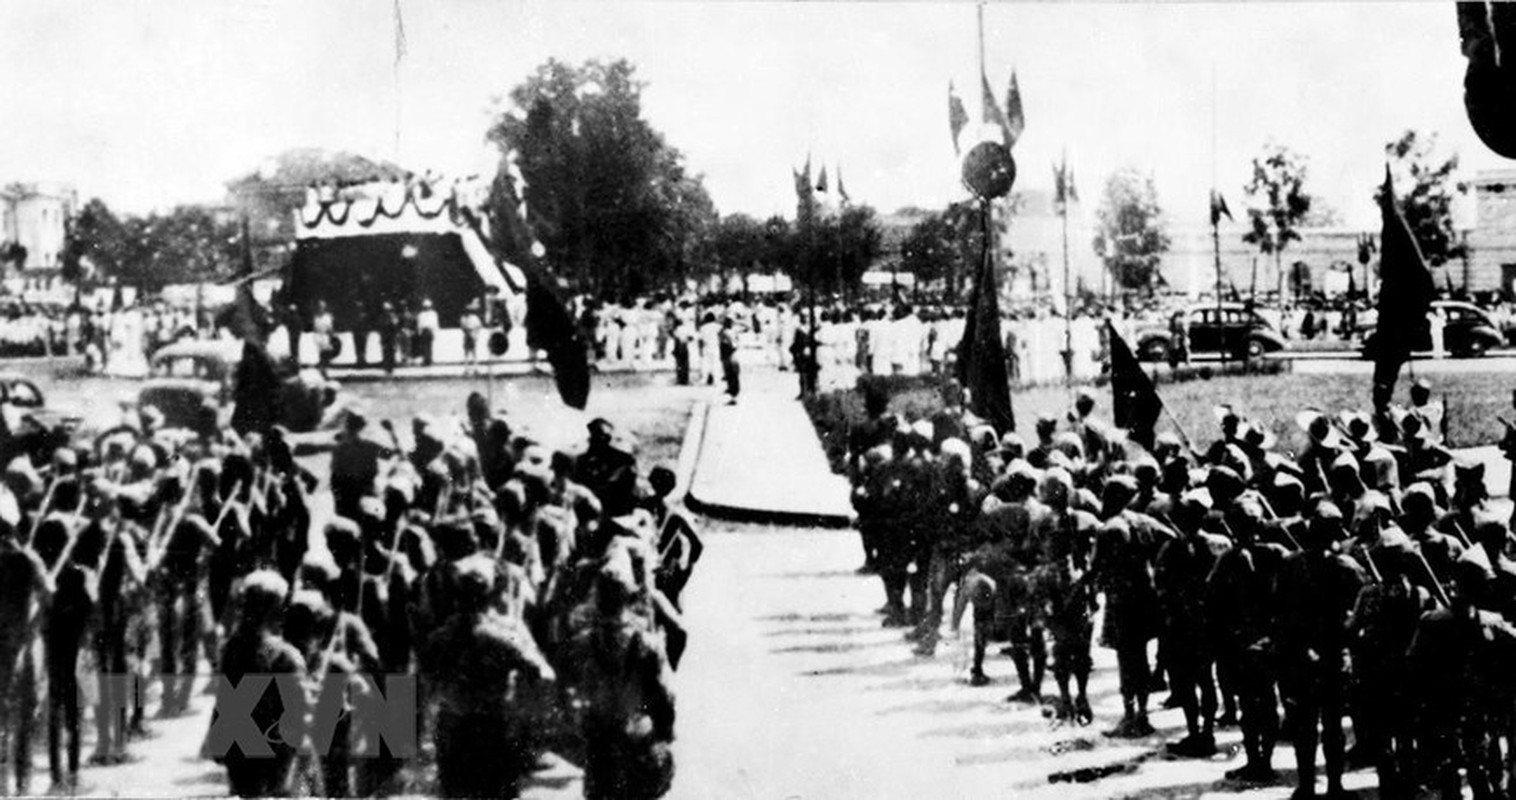 Dieu chua biet ve Quan doi Nhan dan Viet Nam ngay 2/9/1945-Hinh-6